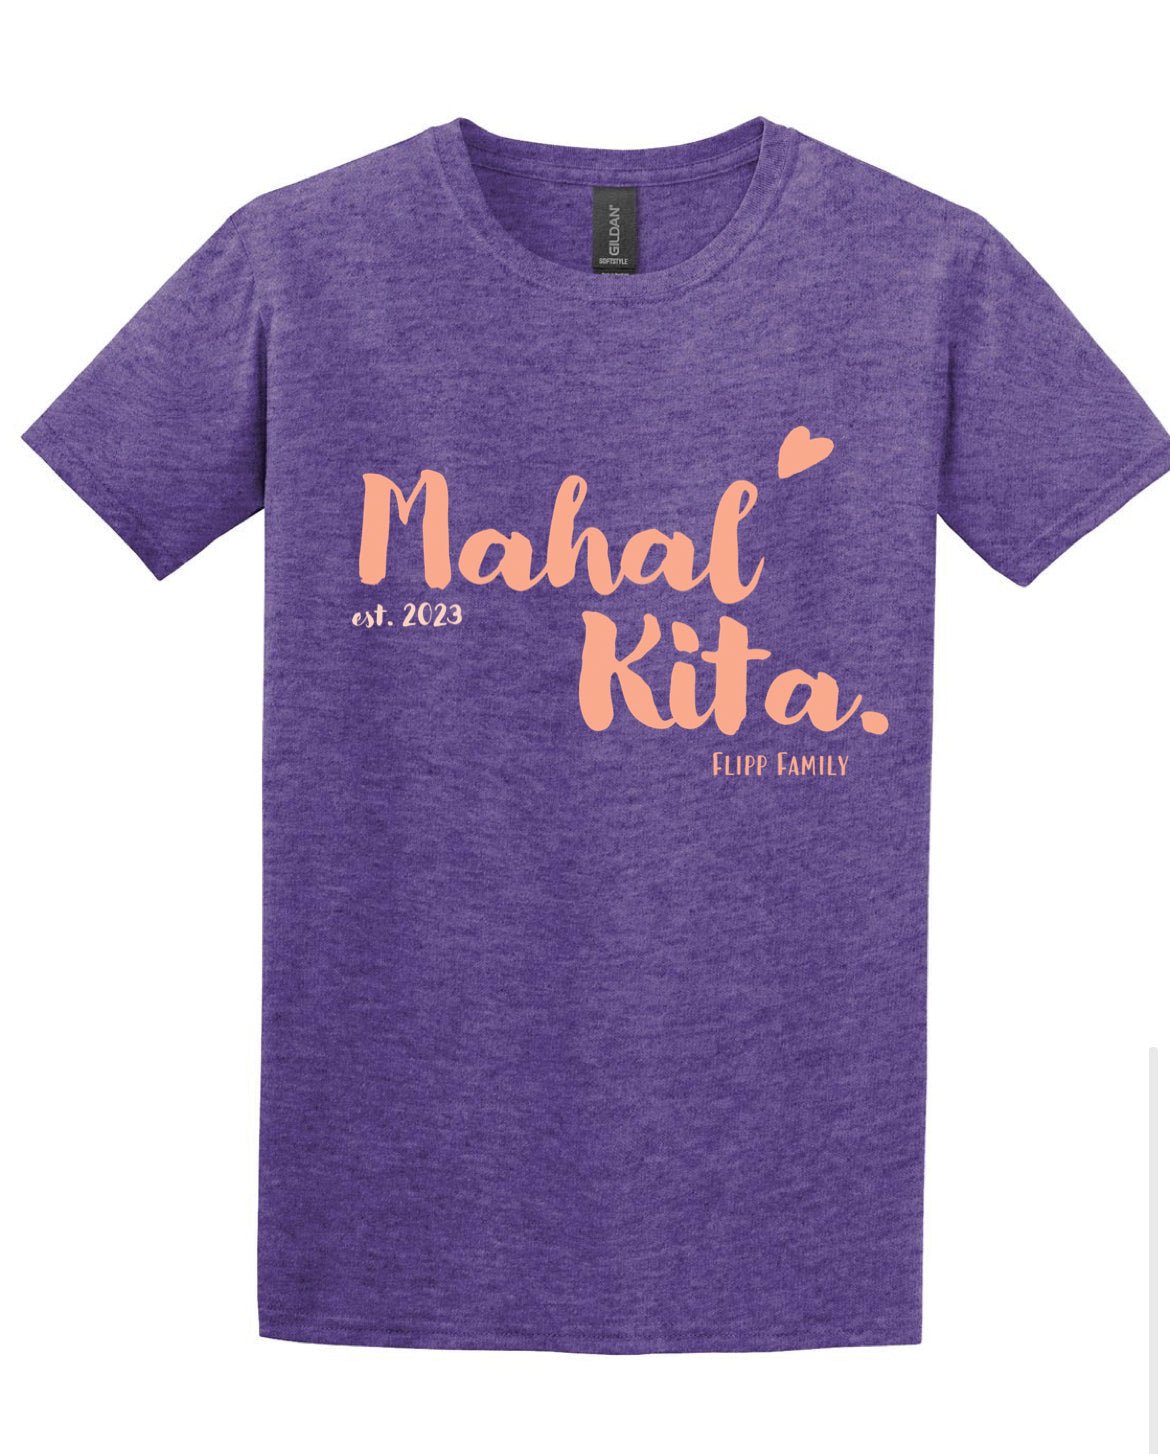 Mahal Kita Shirt (Youth)